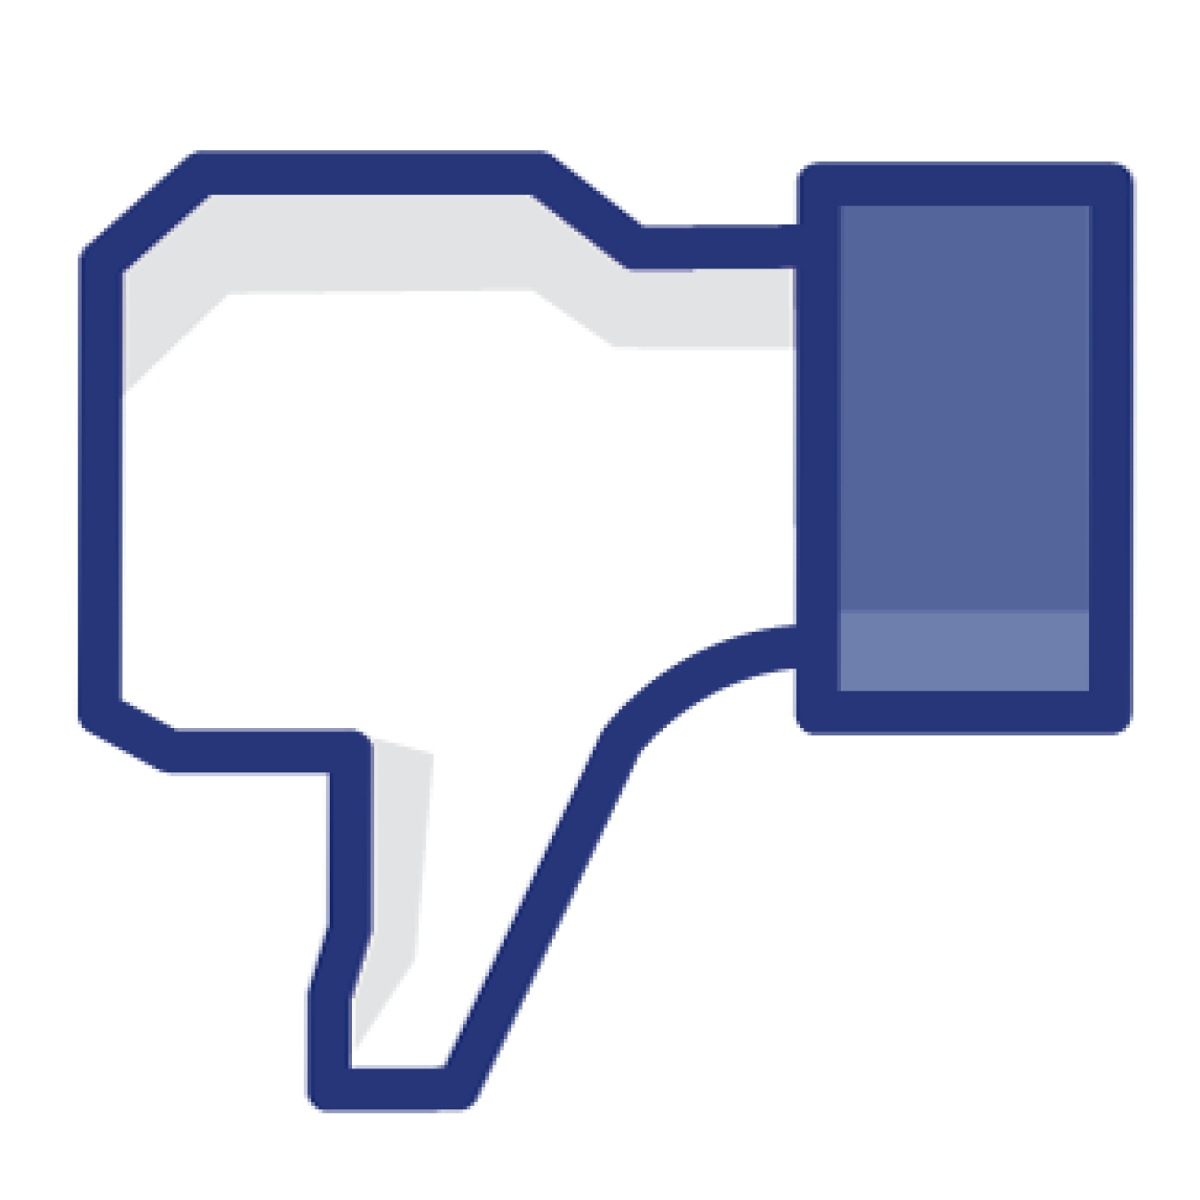 Facebook Like Button Vector